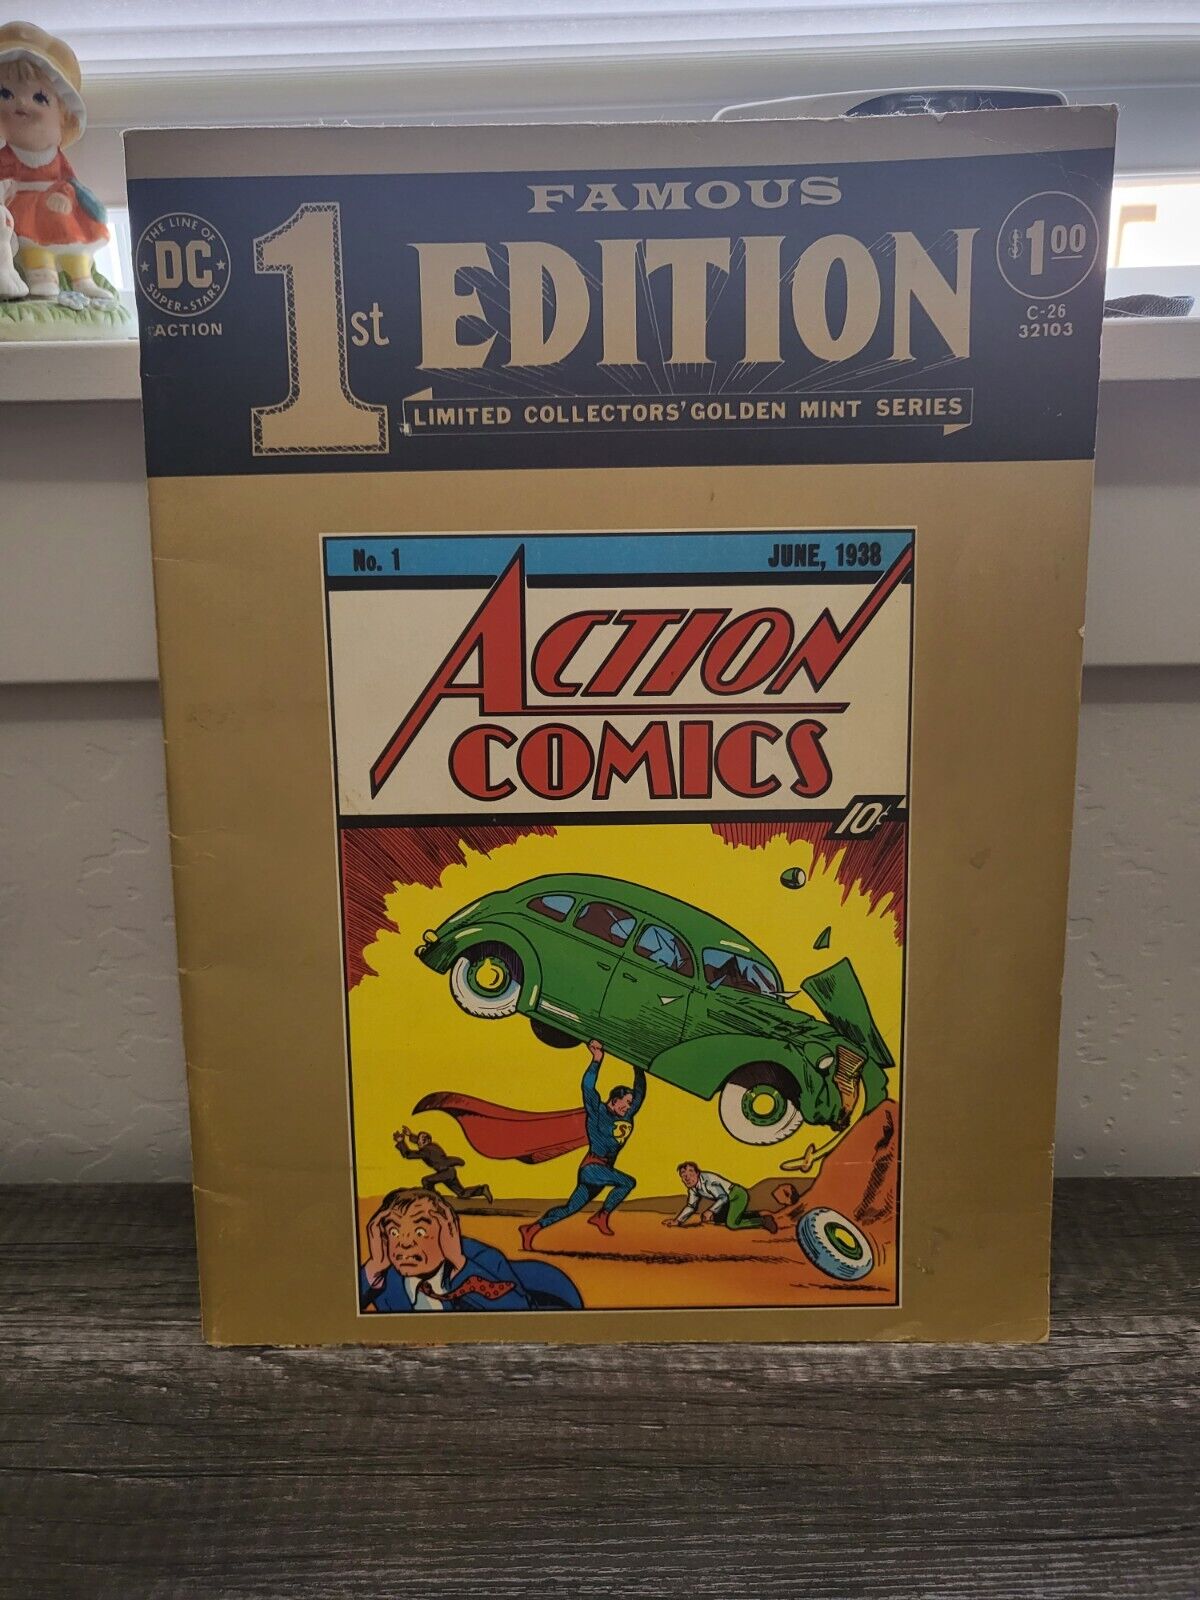 DC Famous 1st Edition Limited Collectors Golden Mint Series Action Comics  